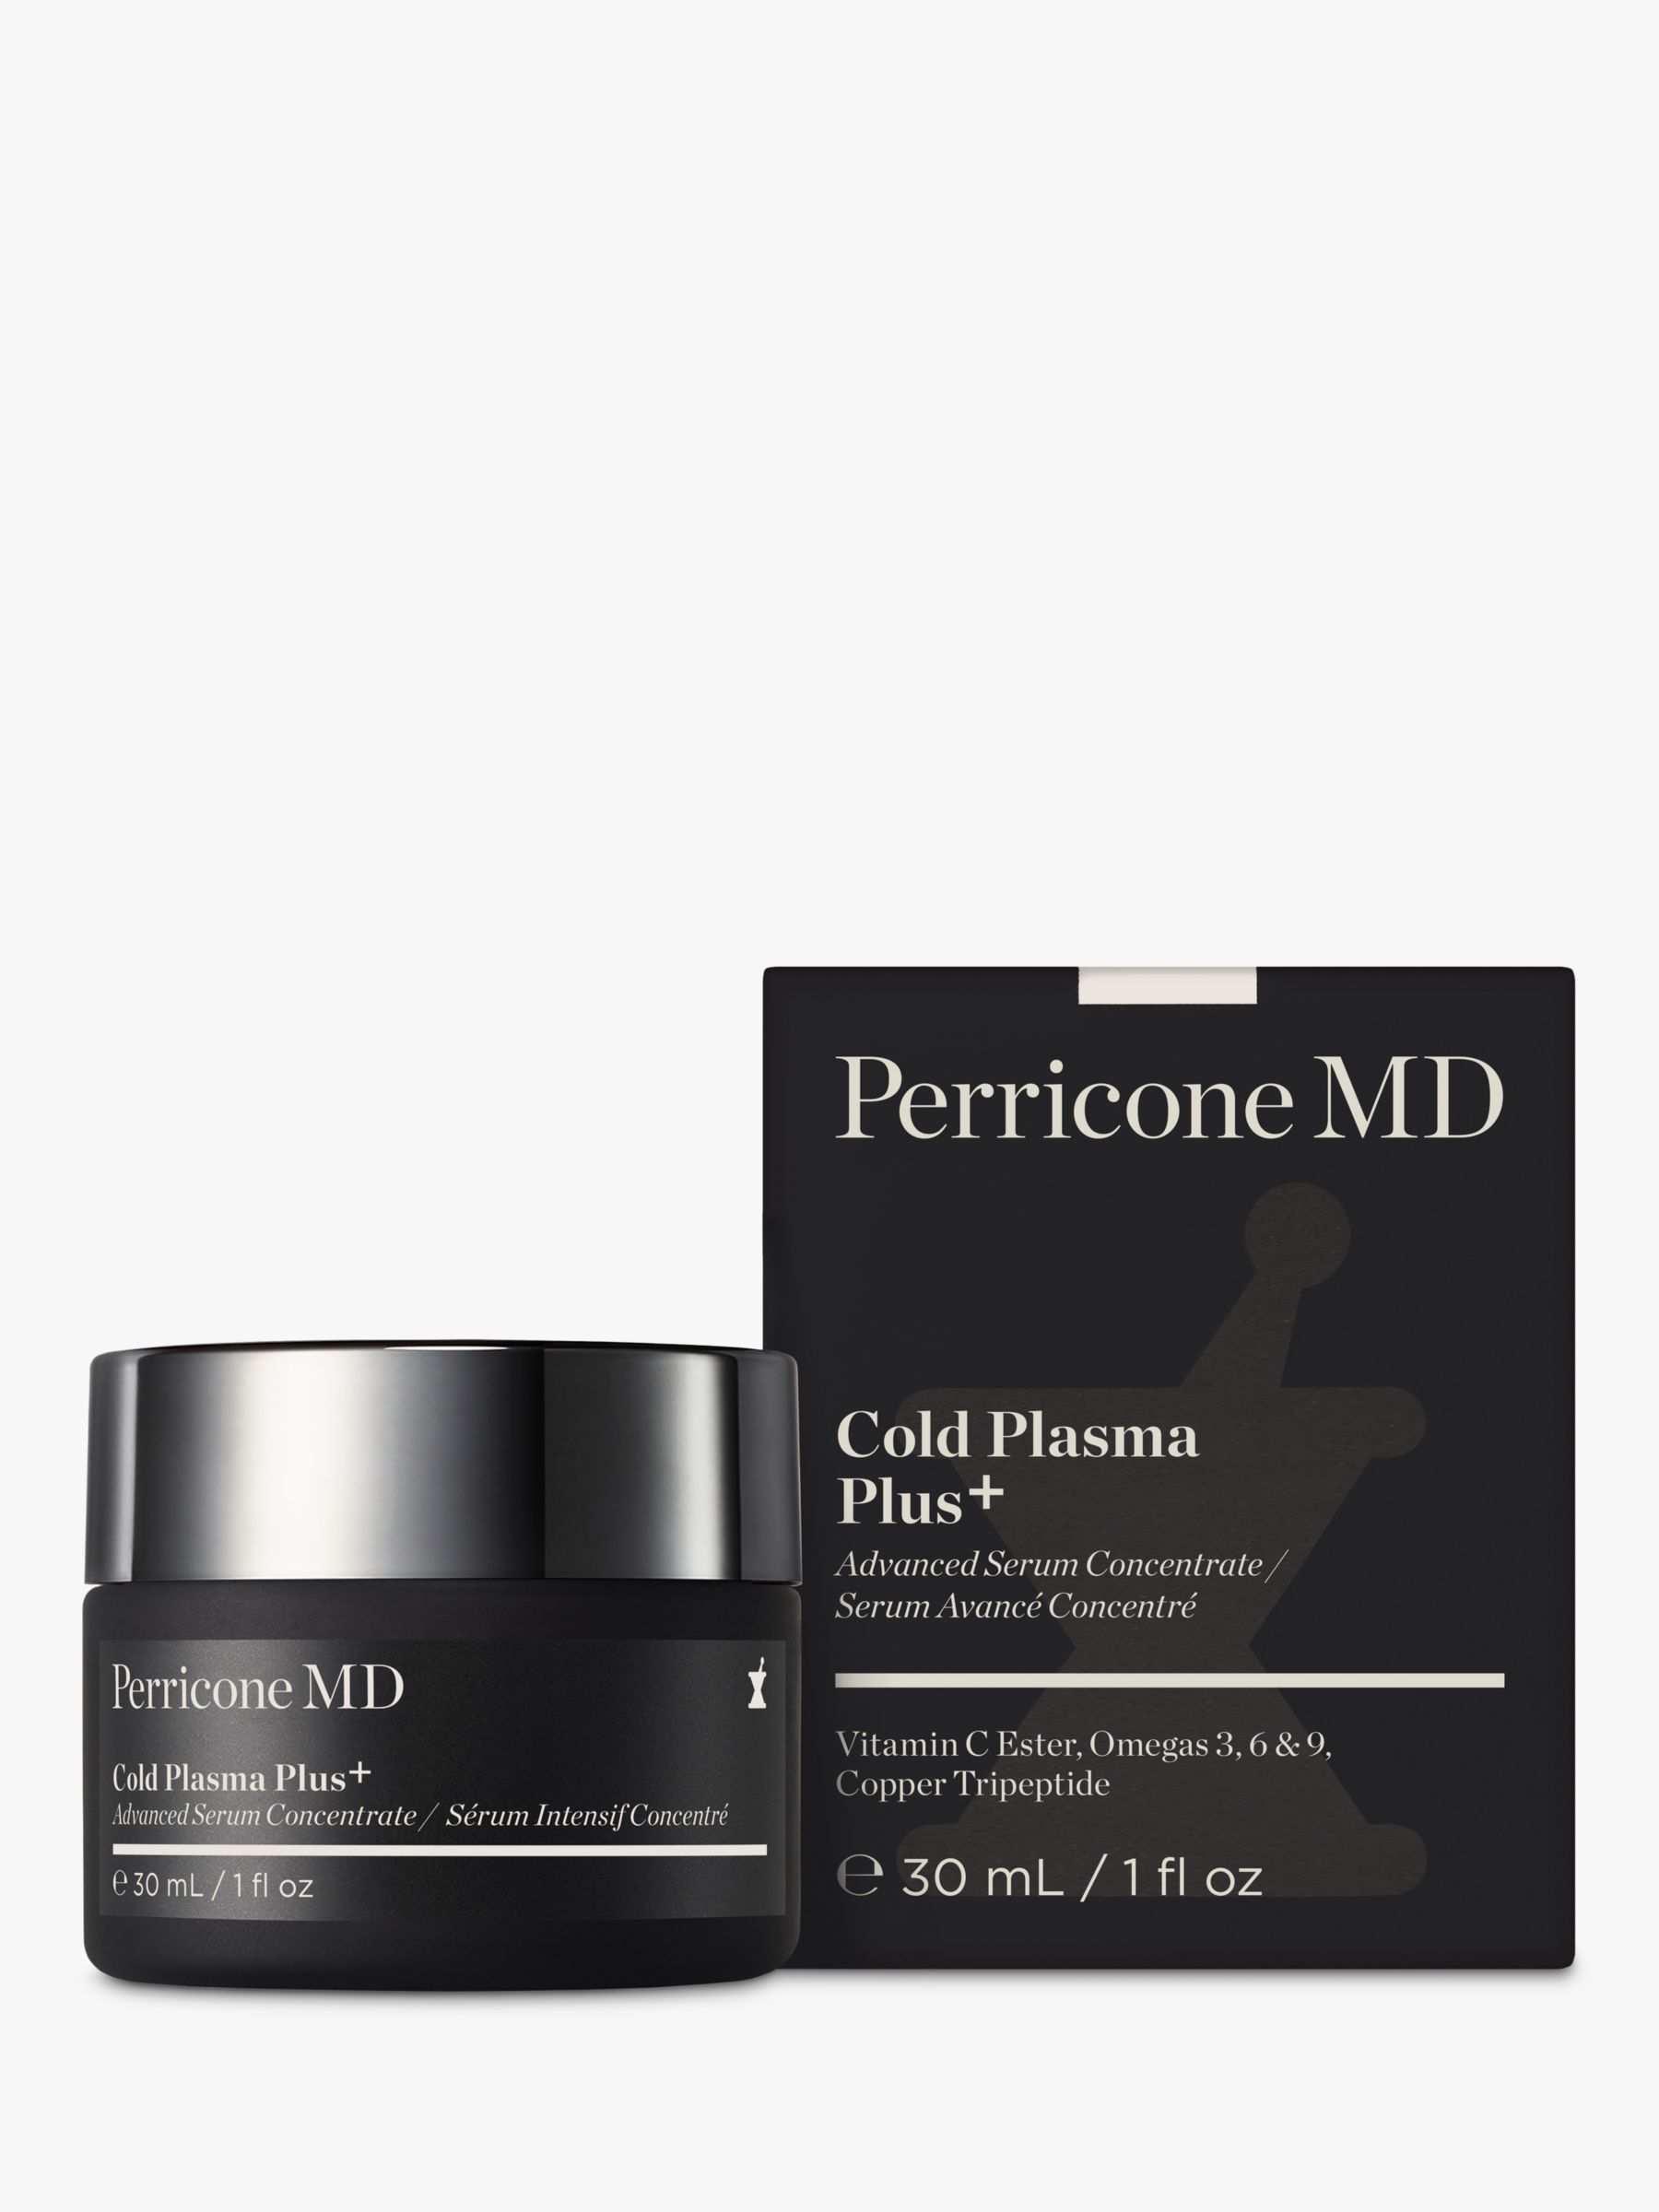 Perricone MD Cold Plasma Plus+ Face Serum, 30ml 2